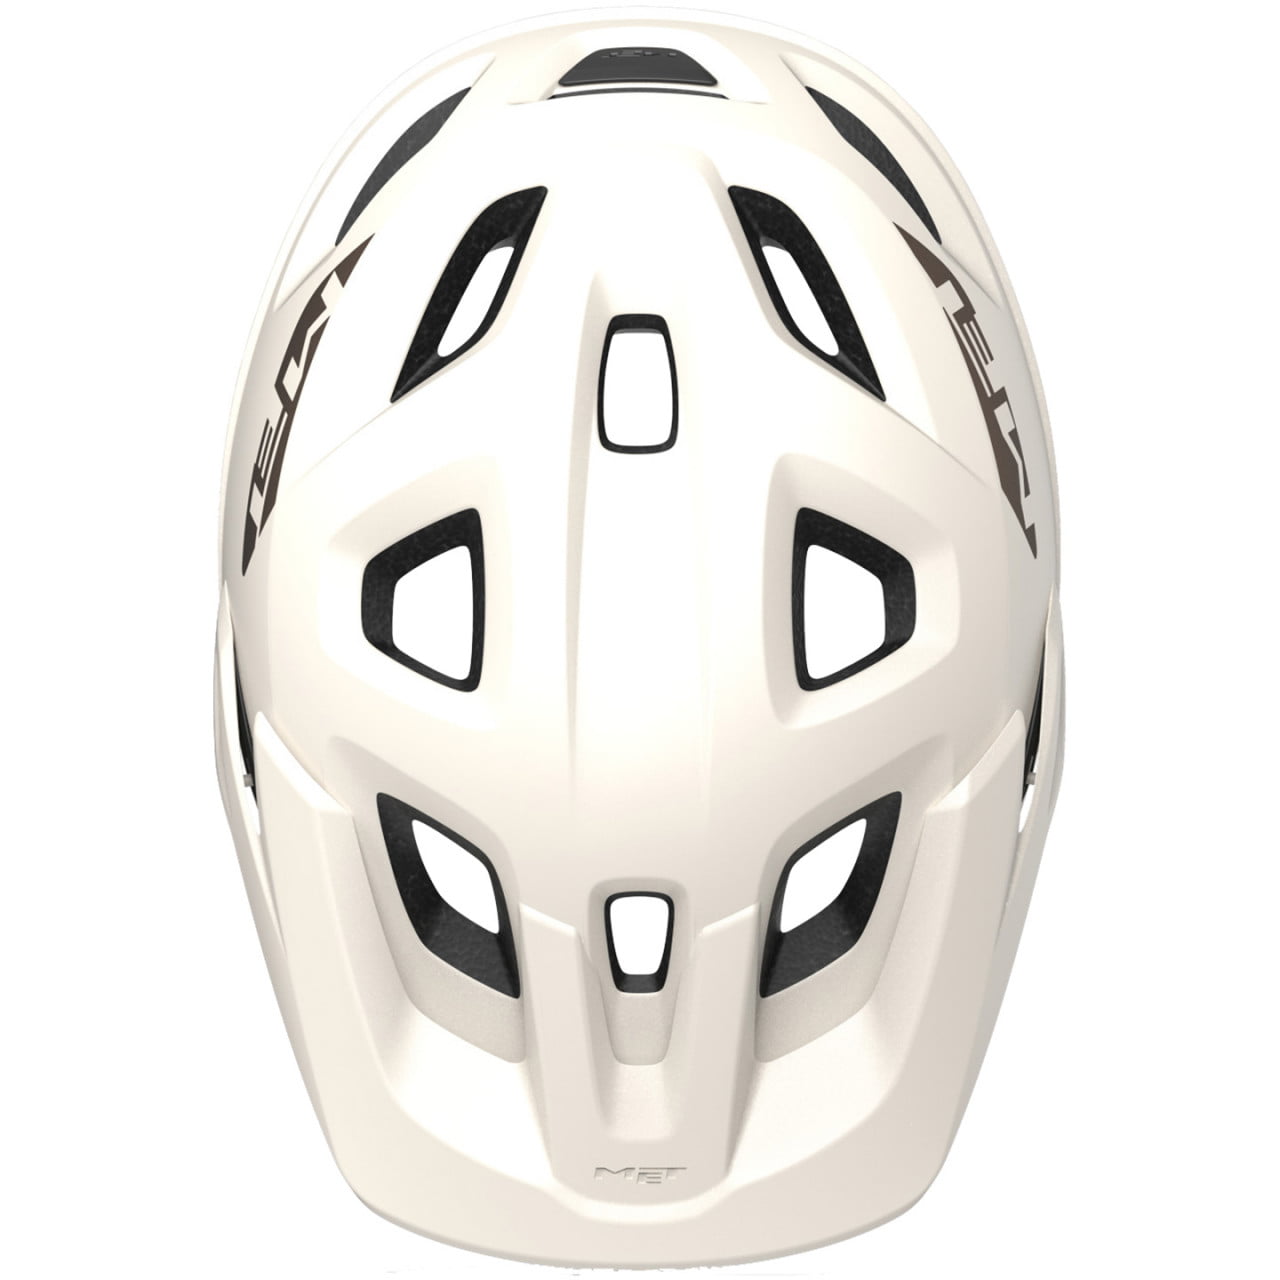 Echo Mips 2022 MTB Helmet